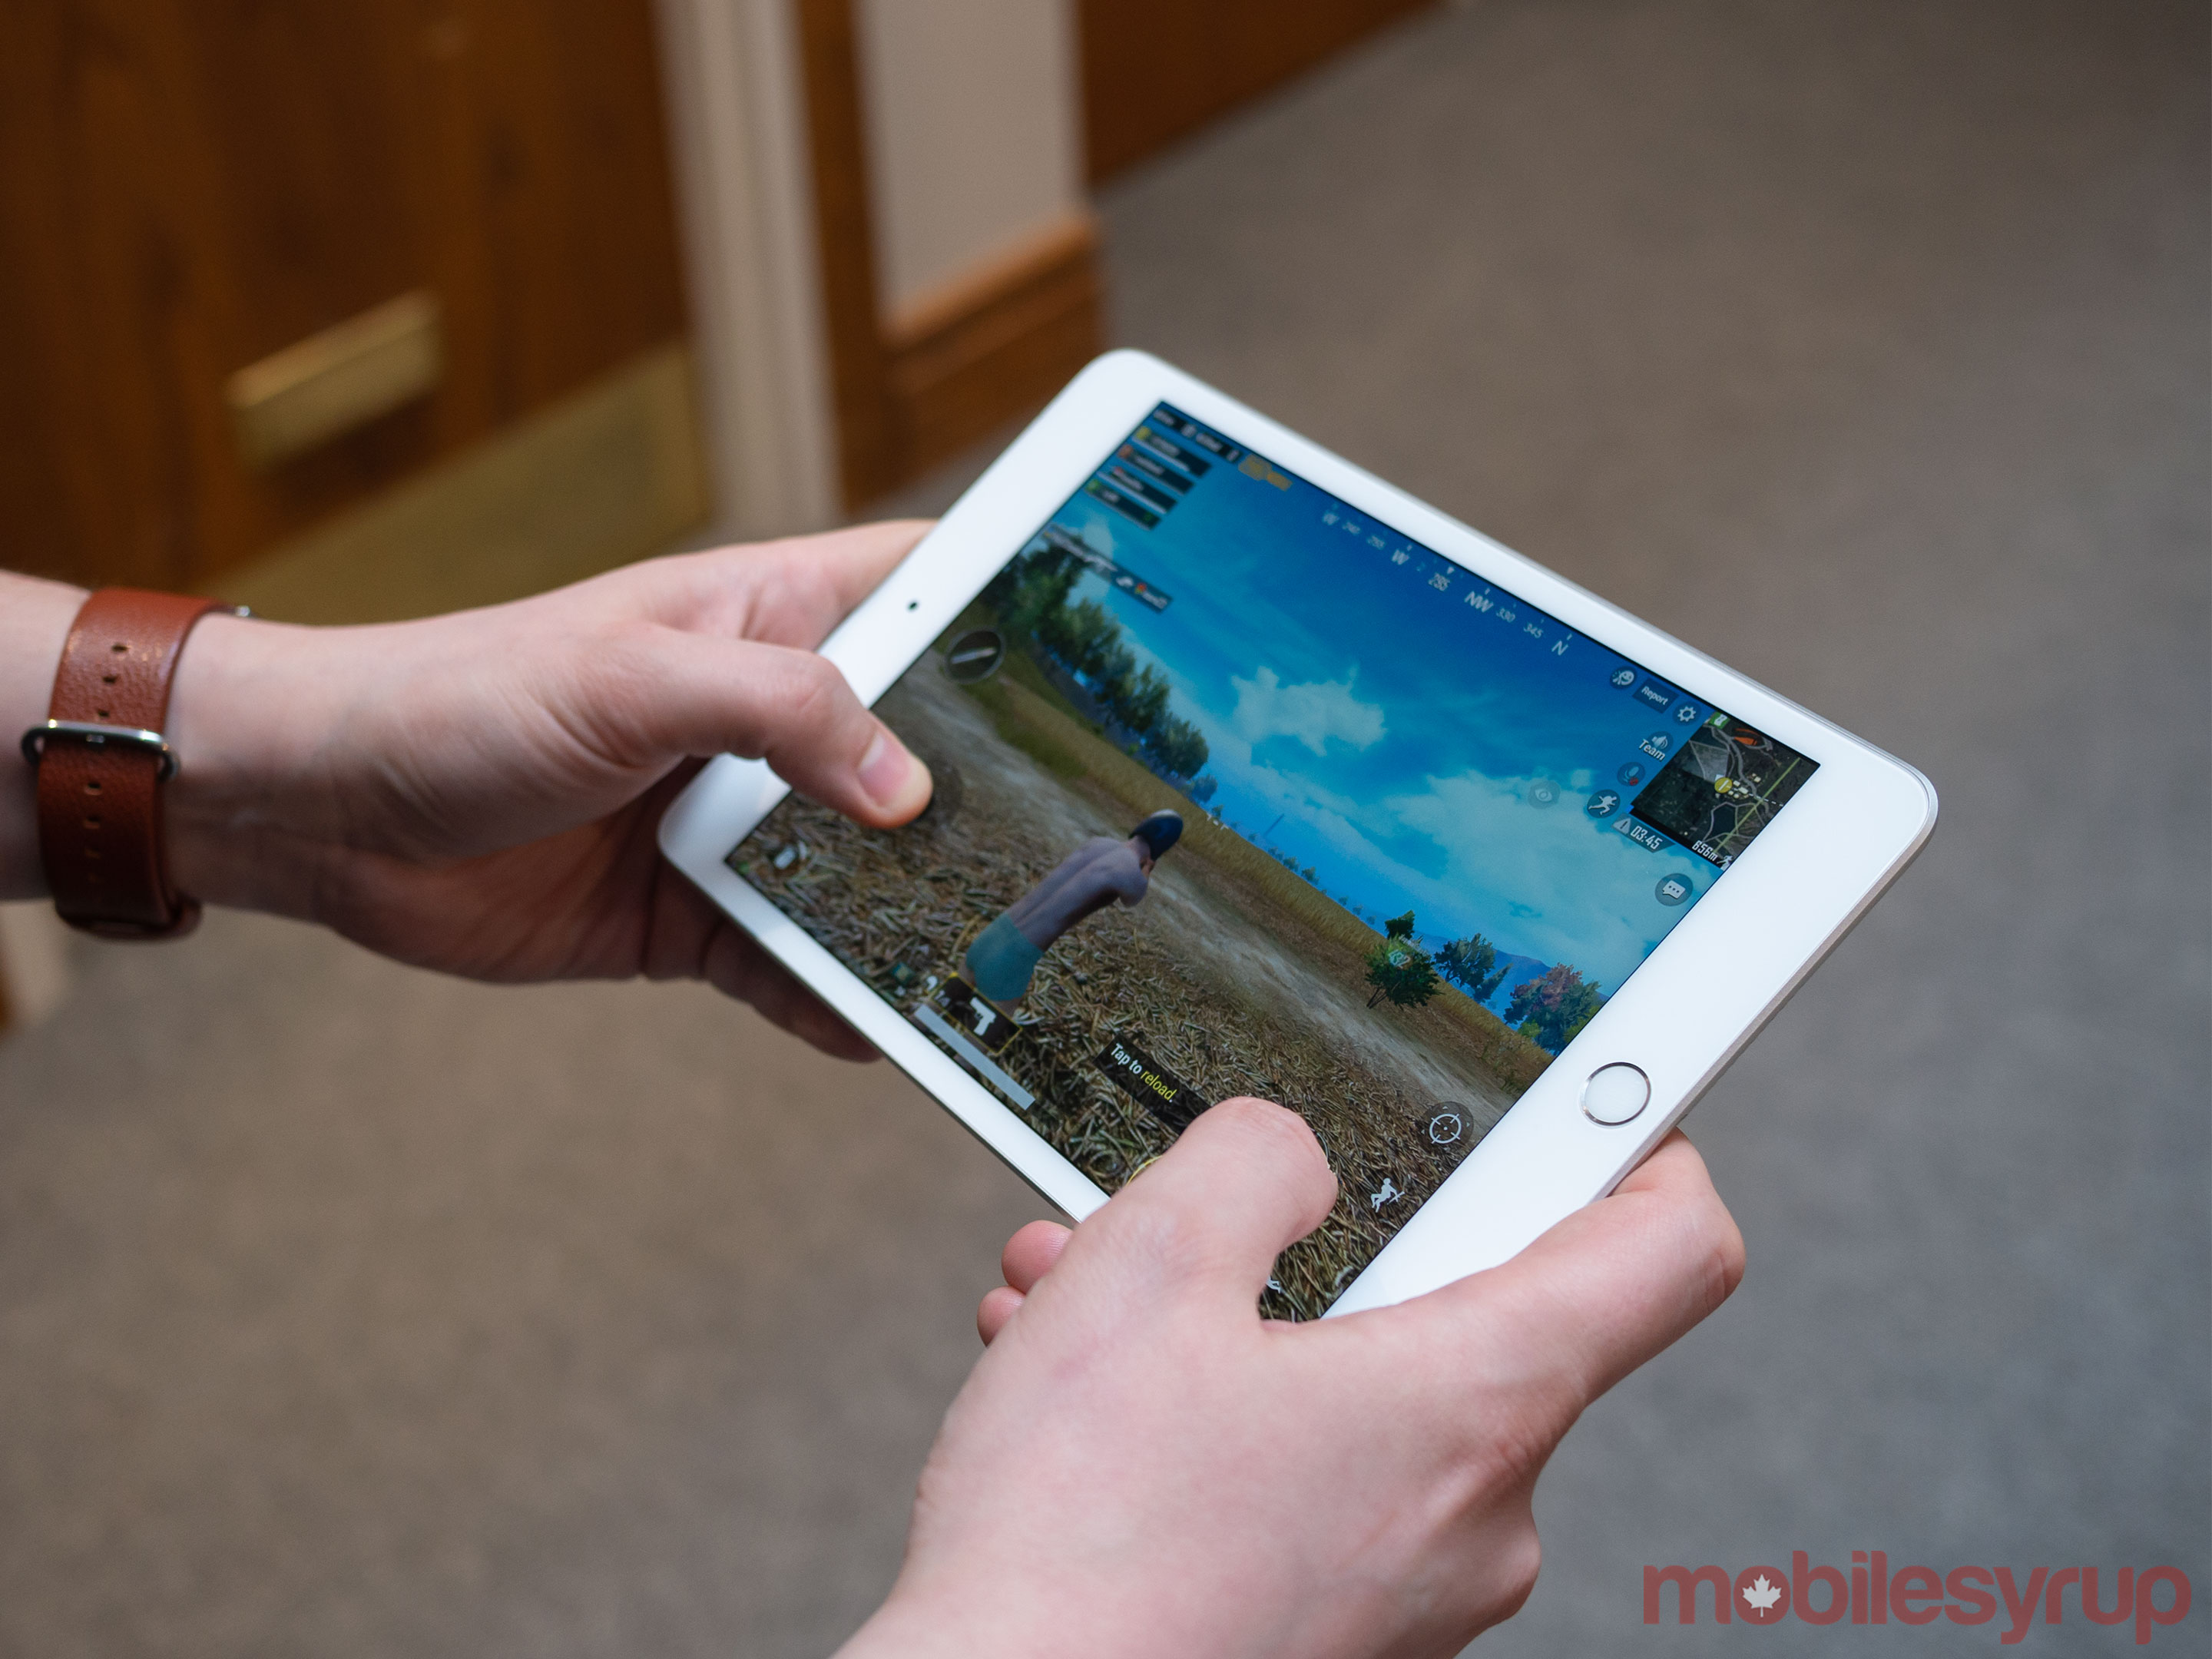 iPad Mini (2019) playing PUBG Mobile